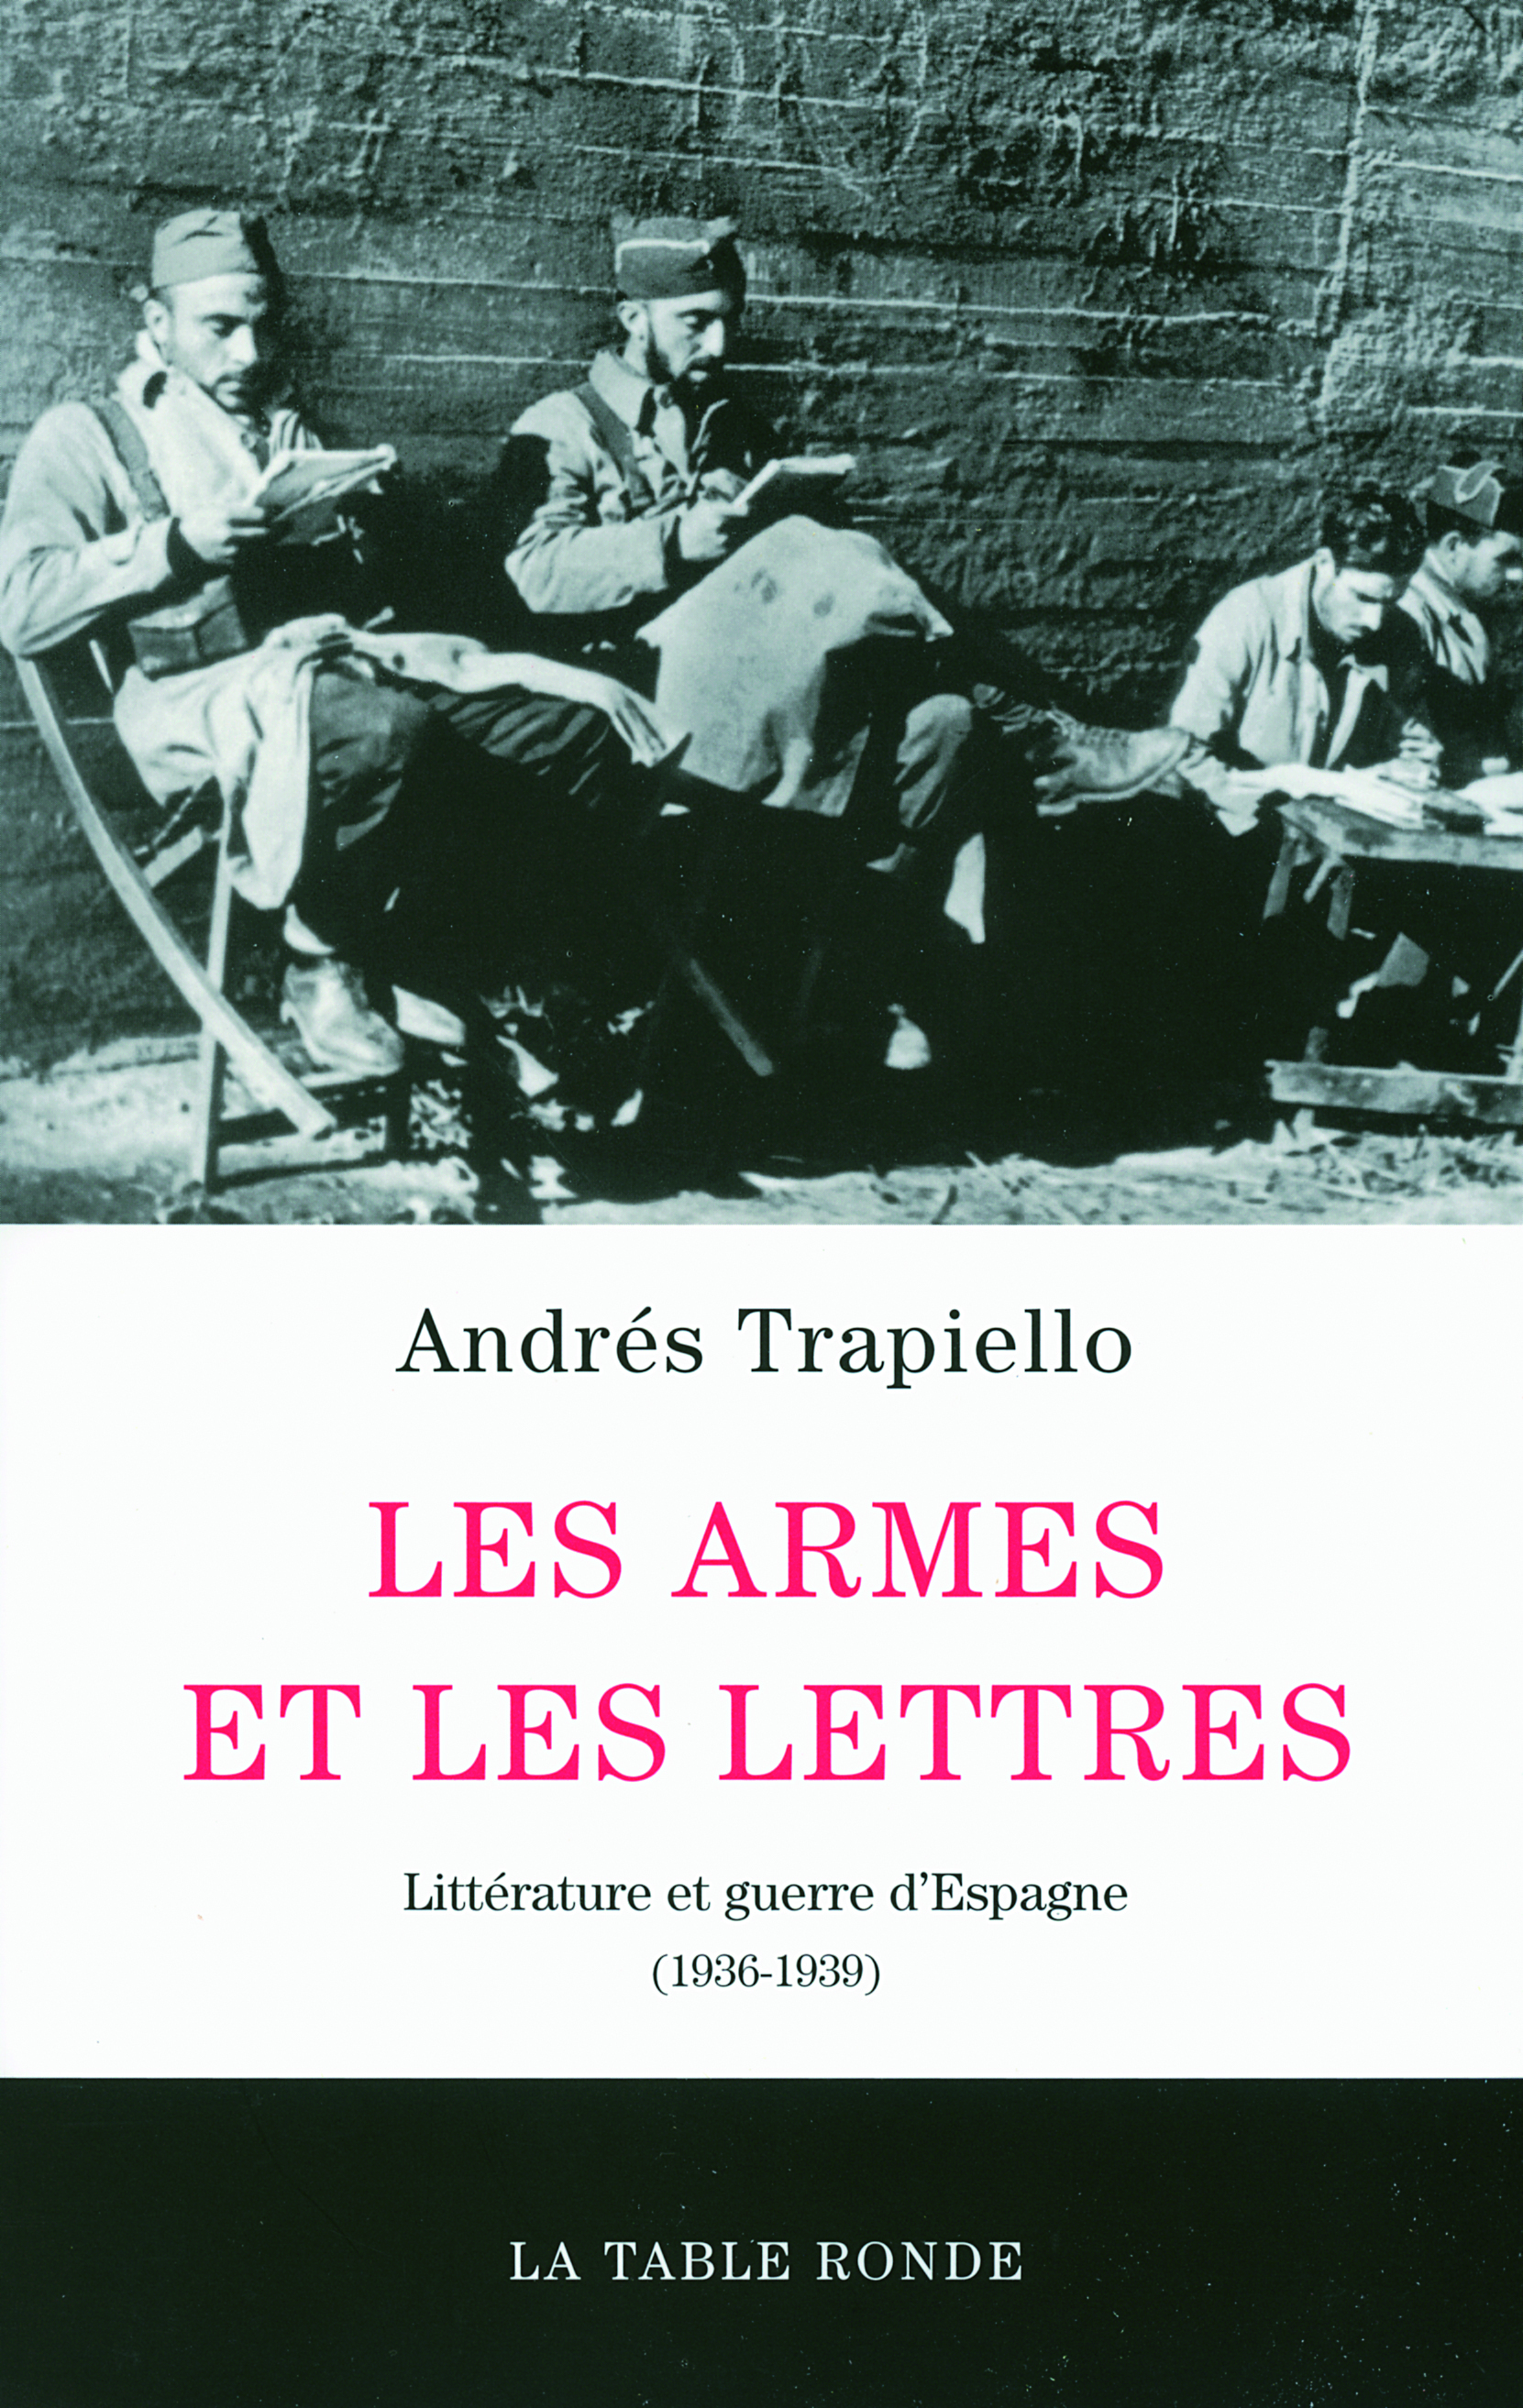 Les armes et les lettres, Littérature et guerre d'Espagne (1936-1939) (9782710330271-front-cover)